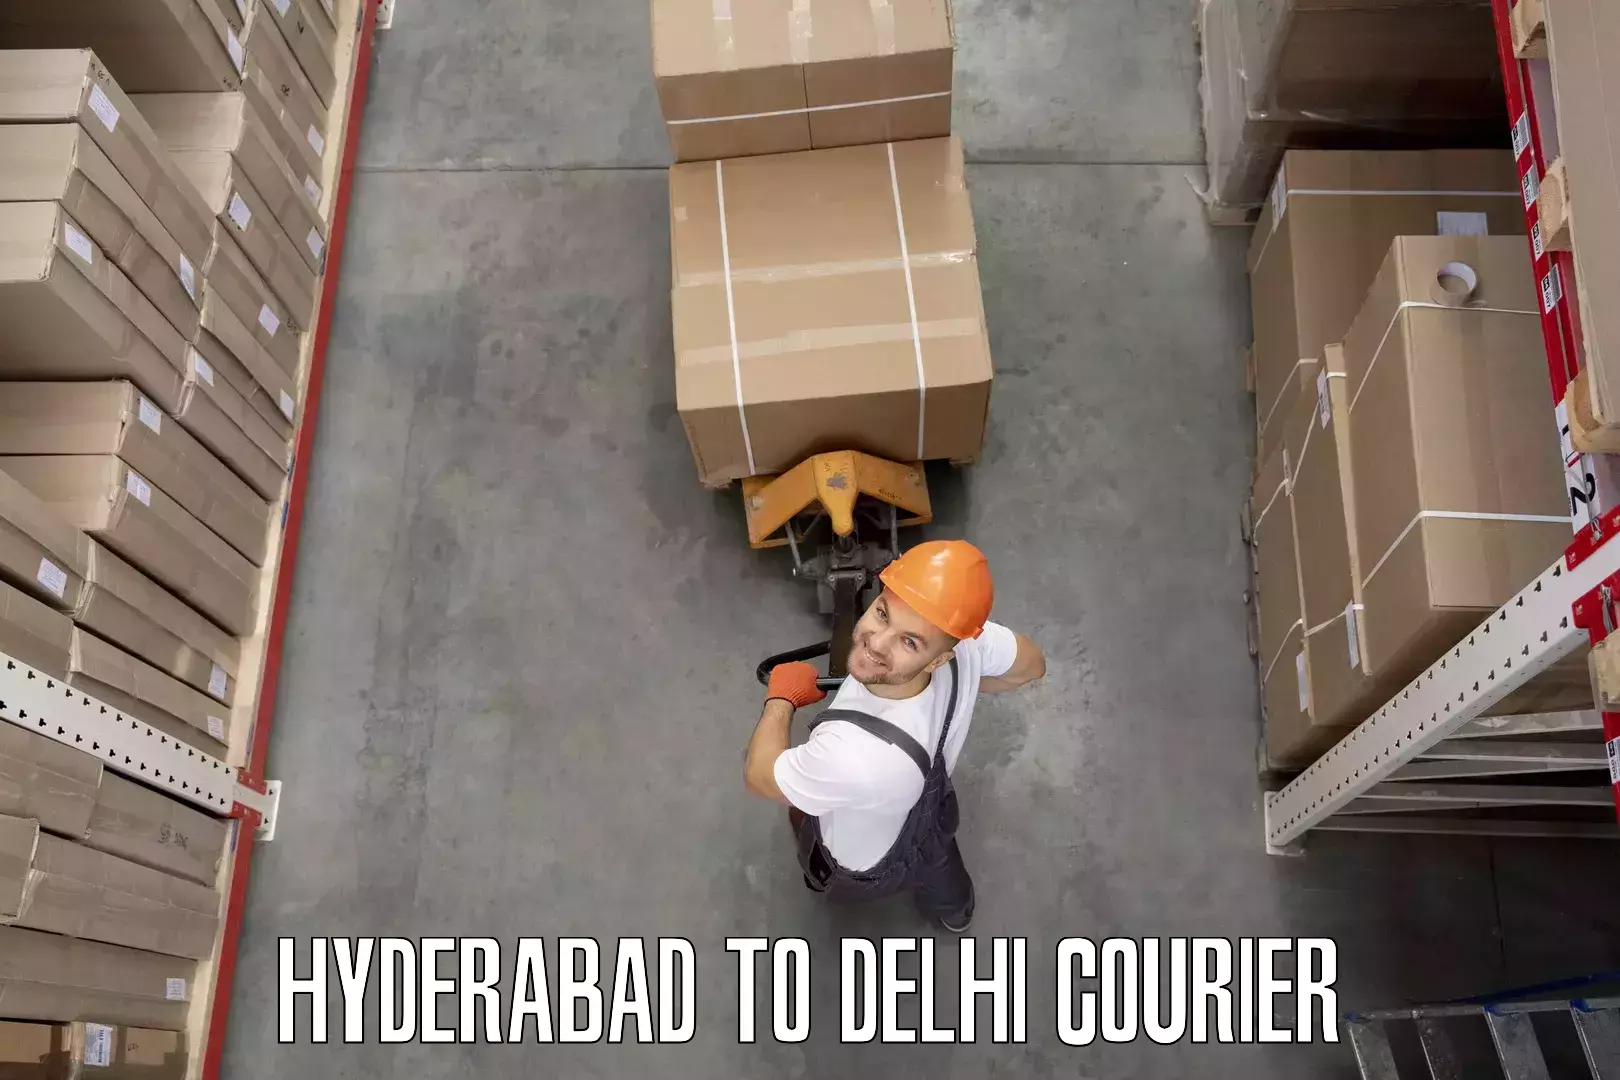 Specialized moving company Hyderabad to Ashok Vihar